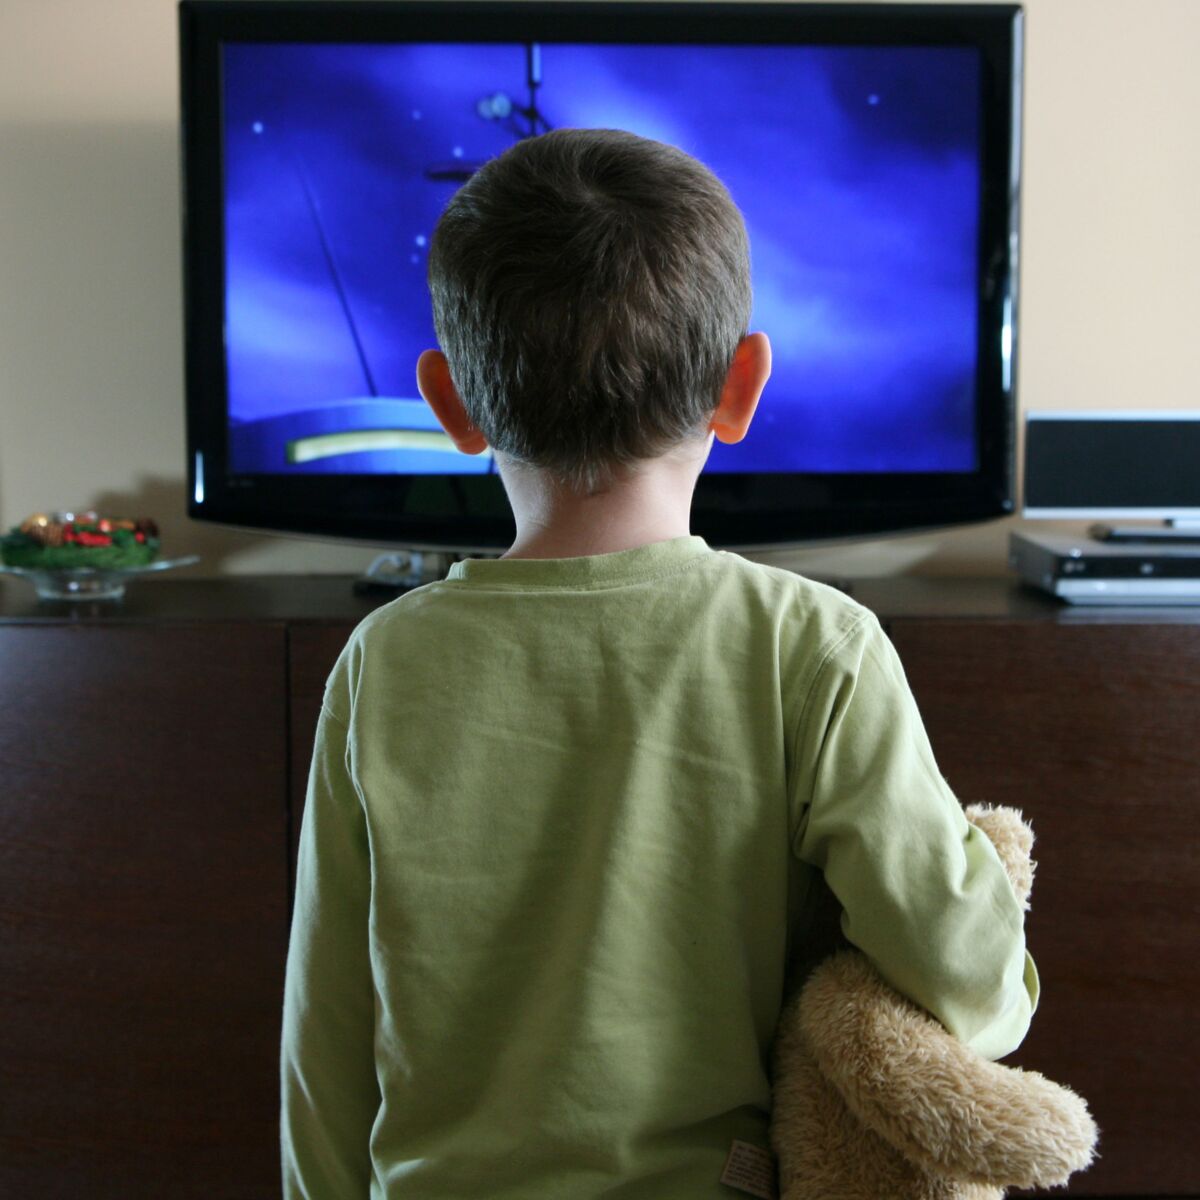 La télévision n'est pas adaptée aux enfants de moins de 3 ans